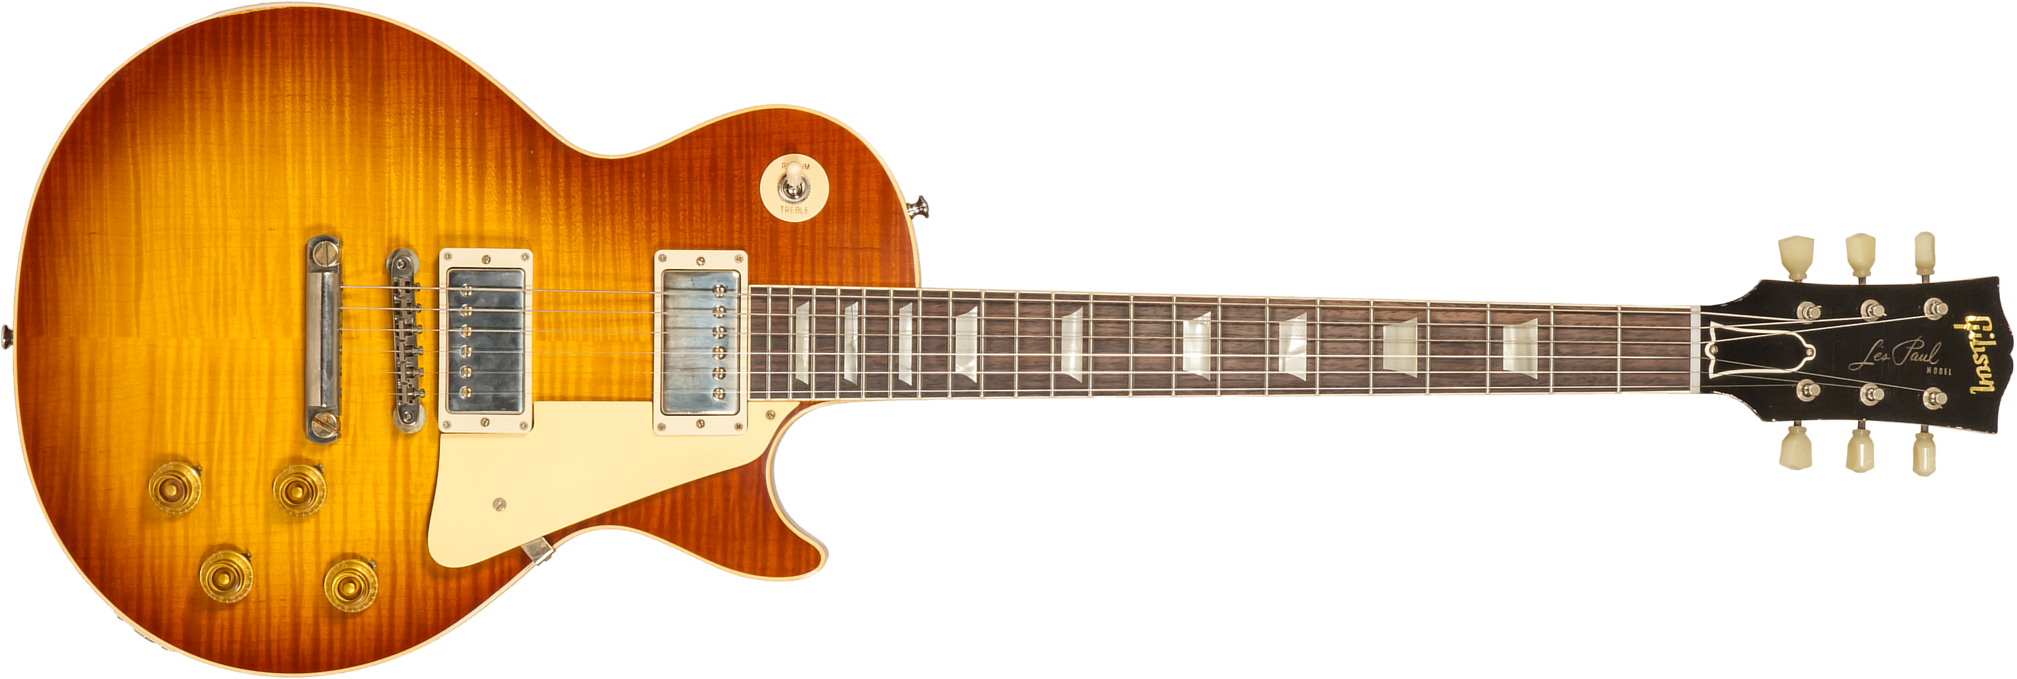 Gibson Custom Shop M2m Les Paul Standard 1959 Reissue 2h Ht Rw #934285 - Murphy Lab Light Aged Ice Tea Burst - Guitare Électrique Single Cut - Main pi